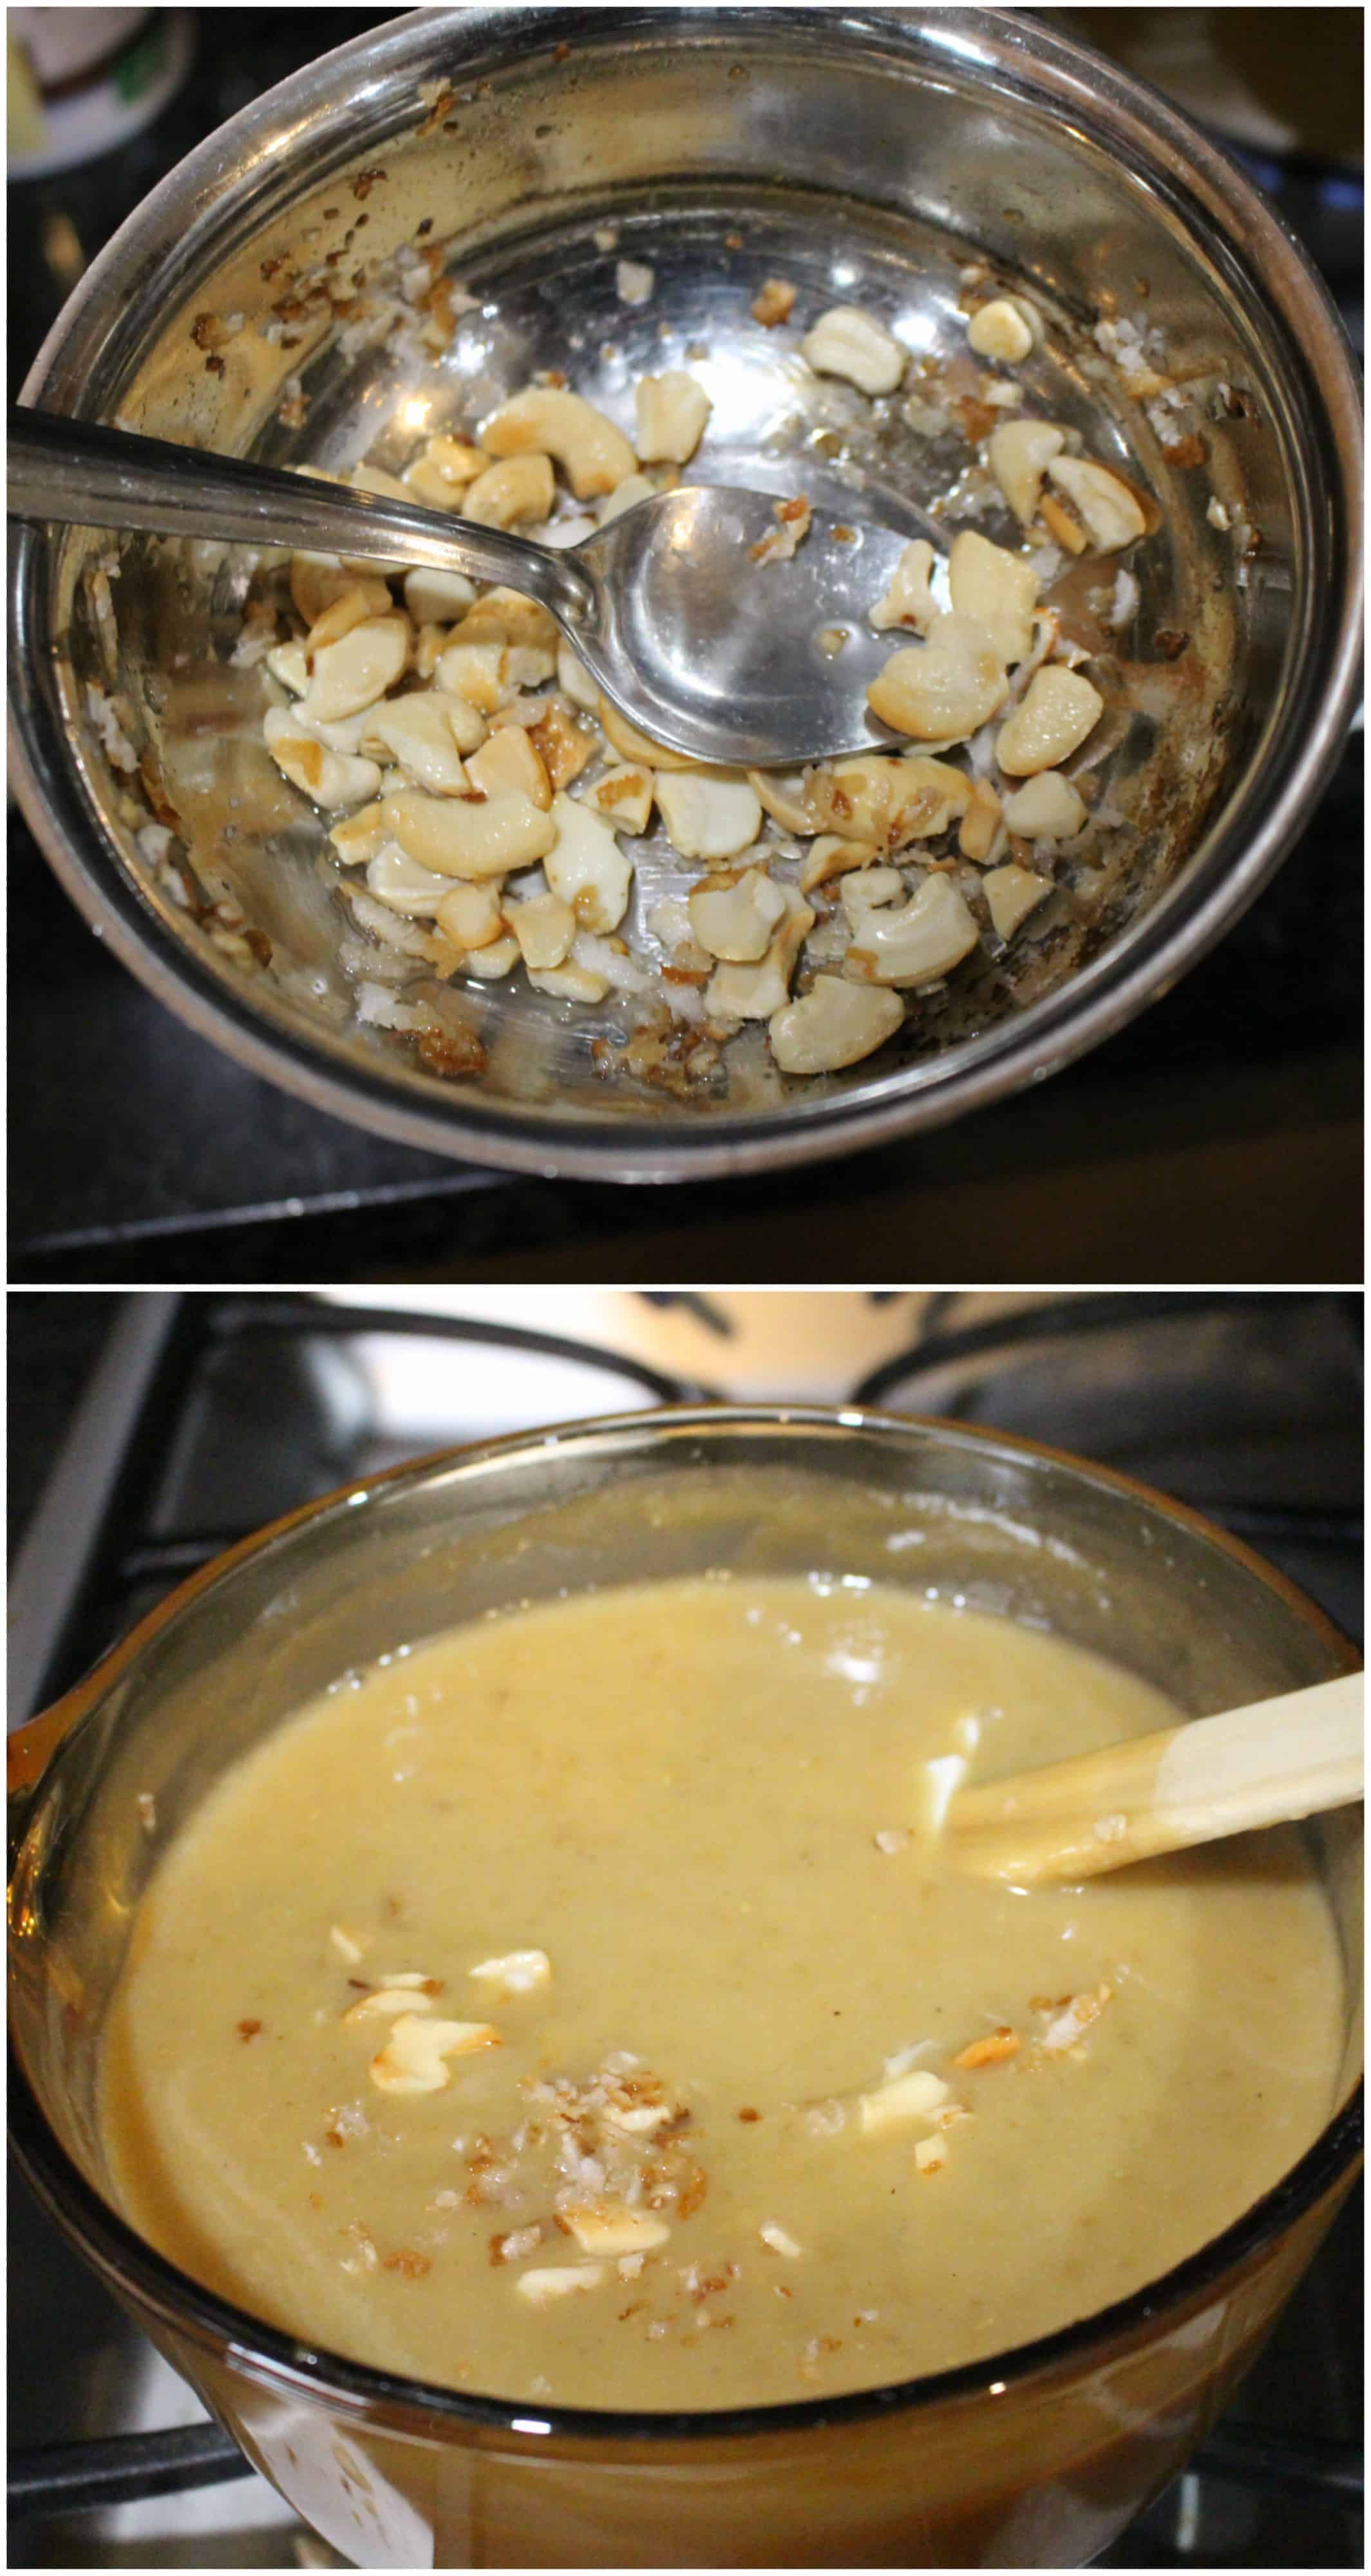 Adding roasted cashews